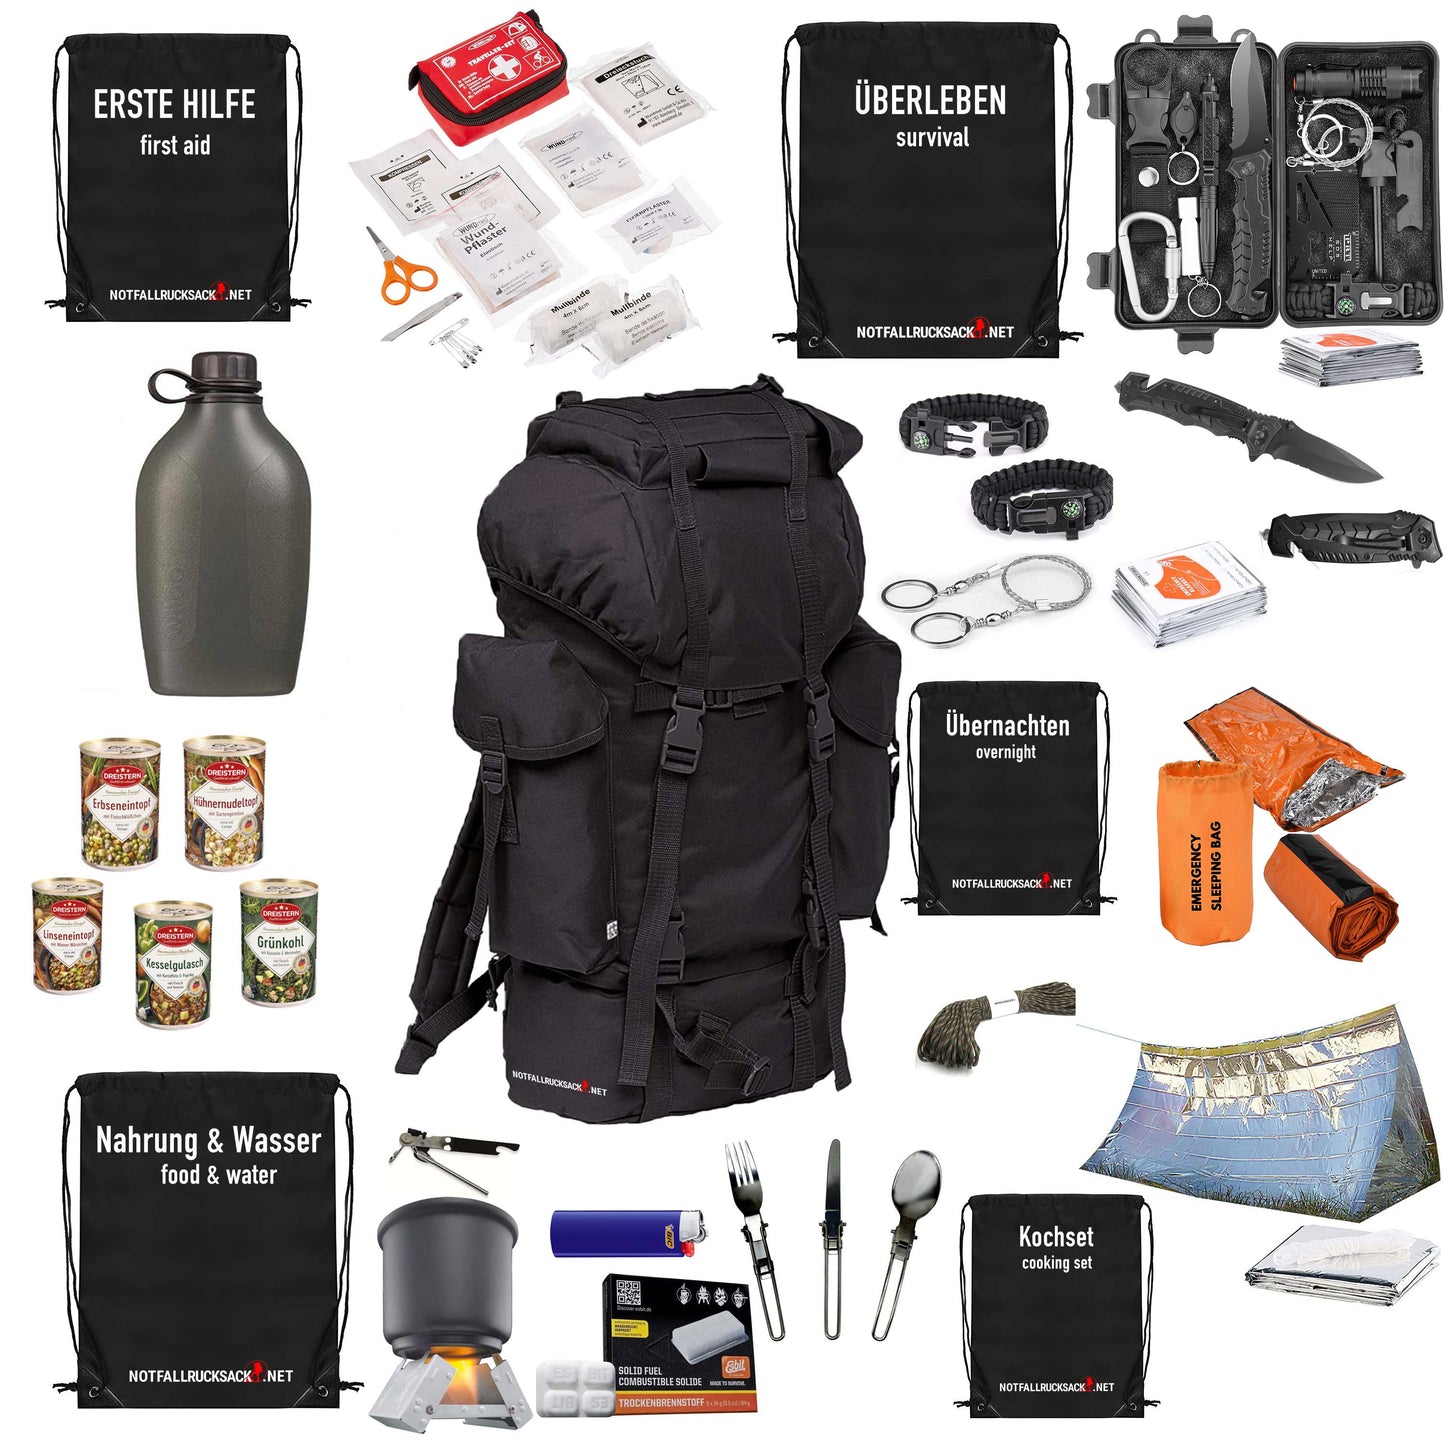 Survival pack ryggsekk fylt - inkludert mat, sove, førstehjelp -